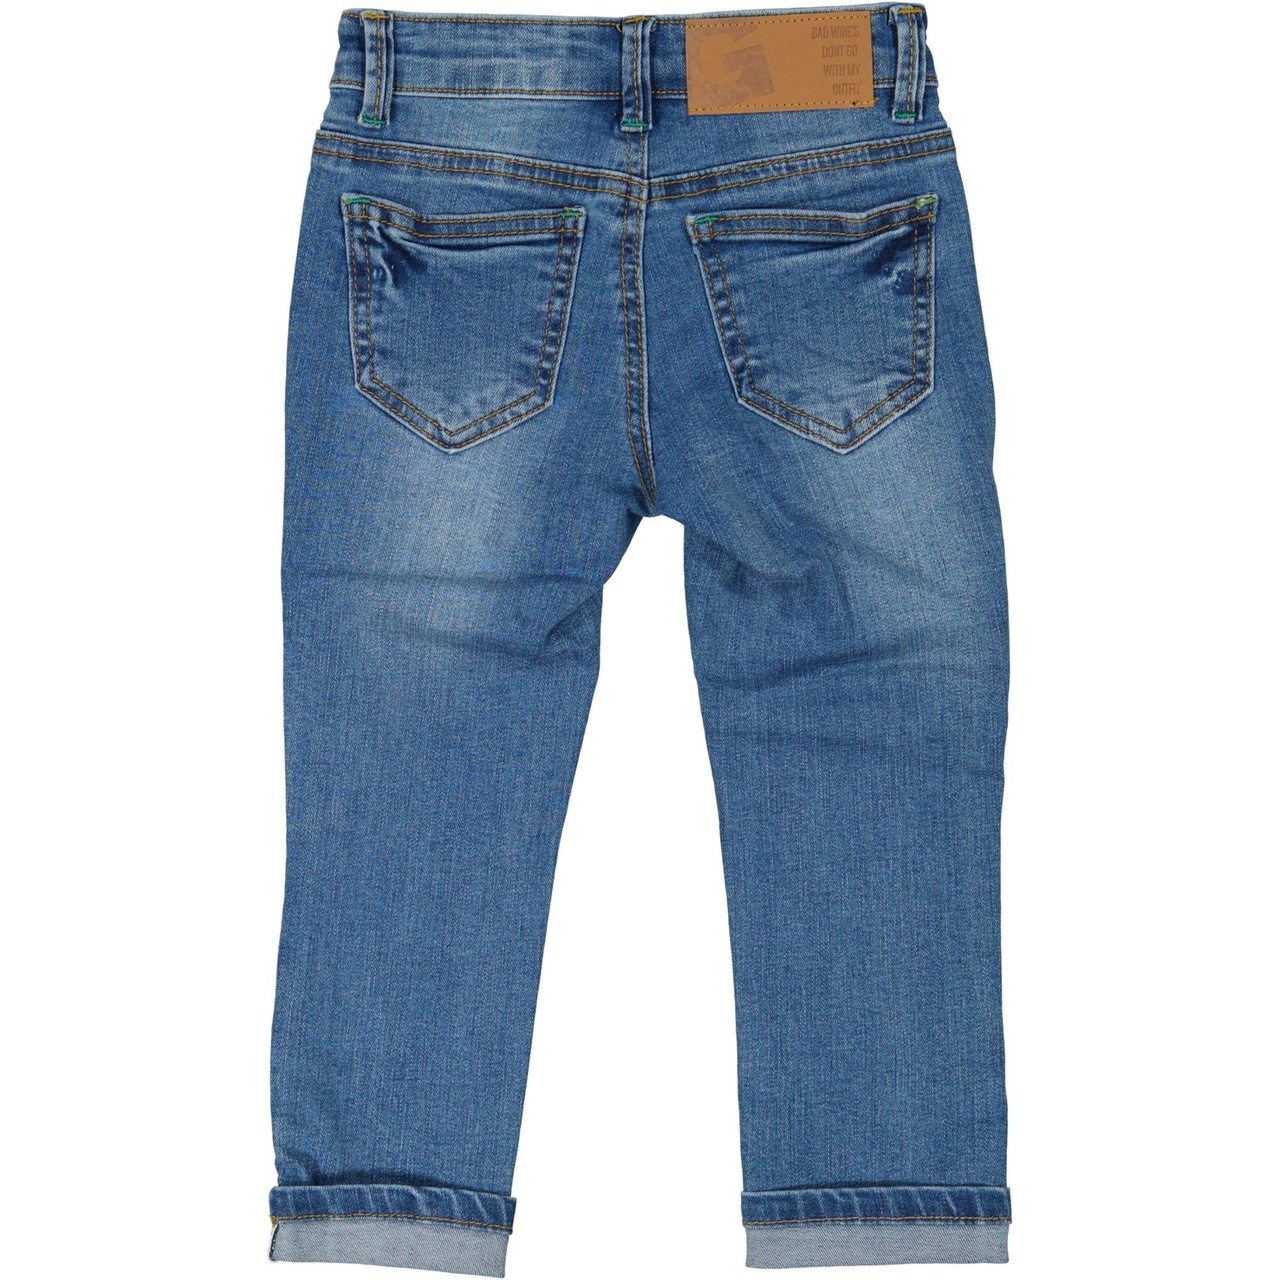 Unisex 5-pocket jeans Denim blue wash